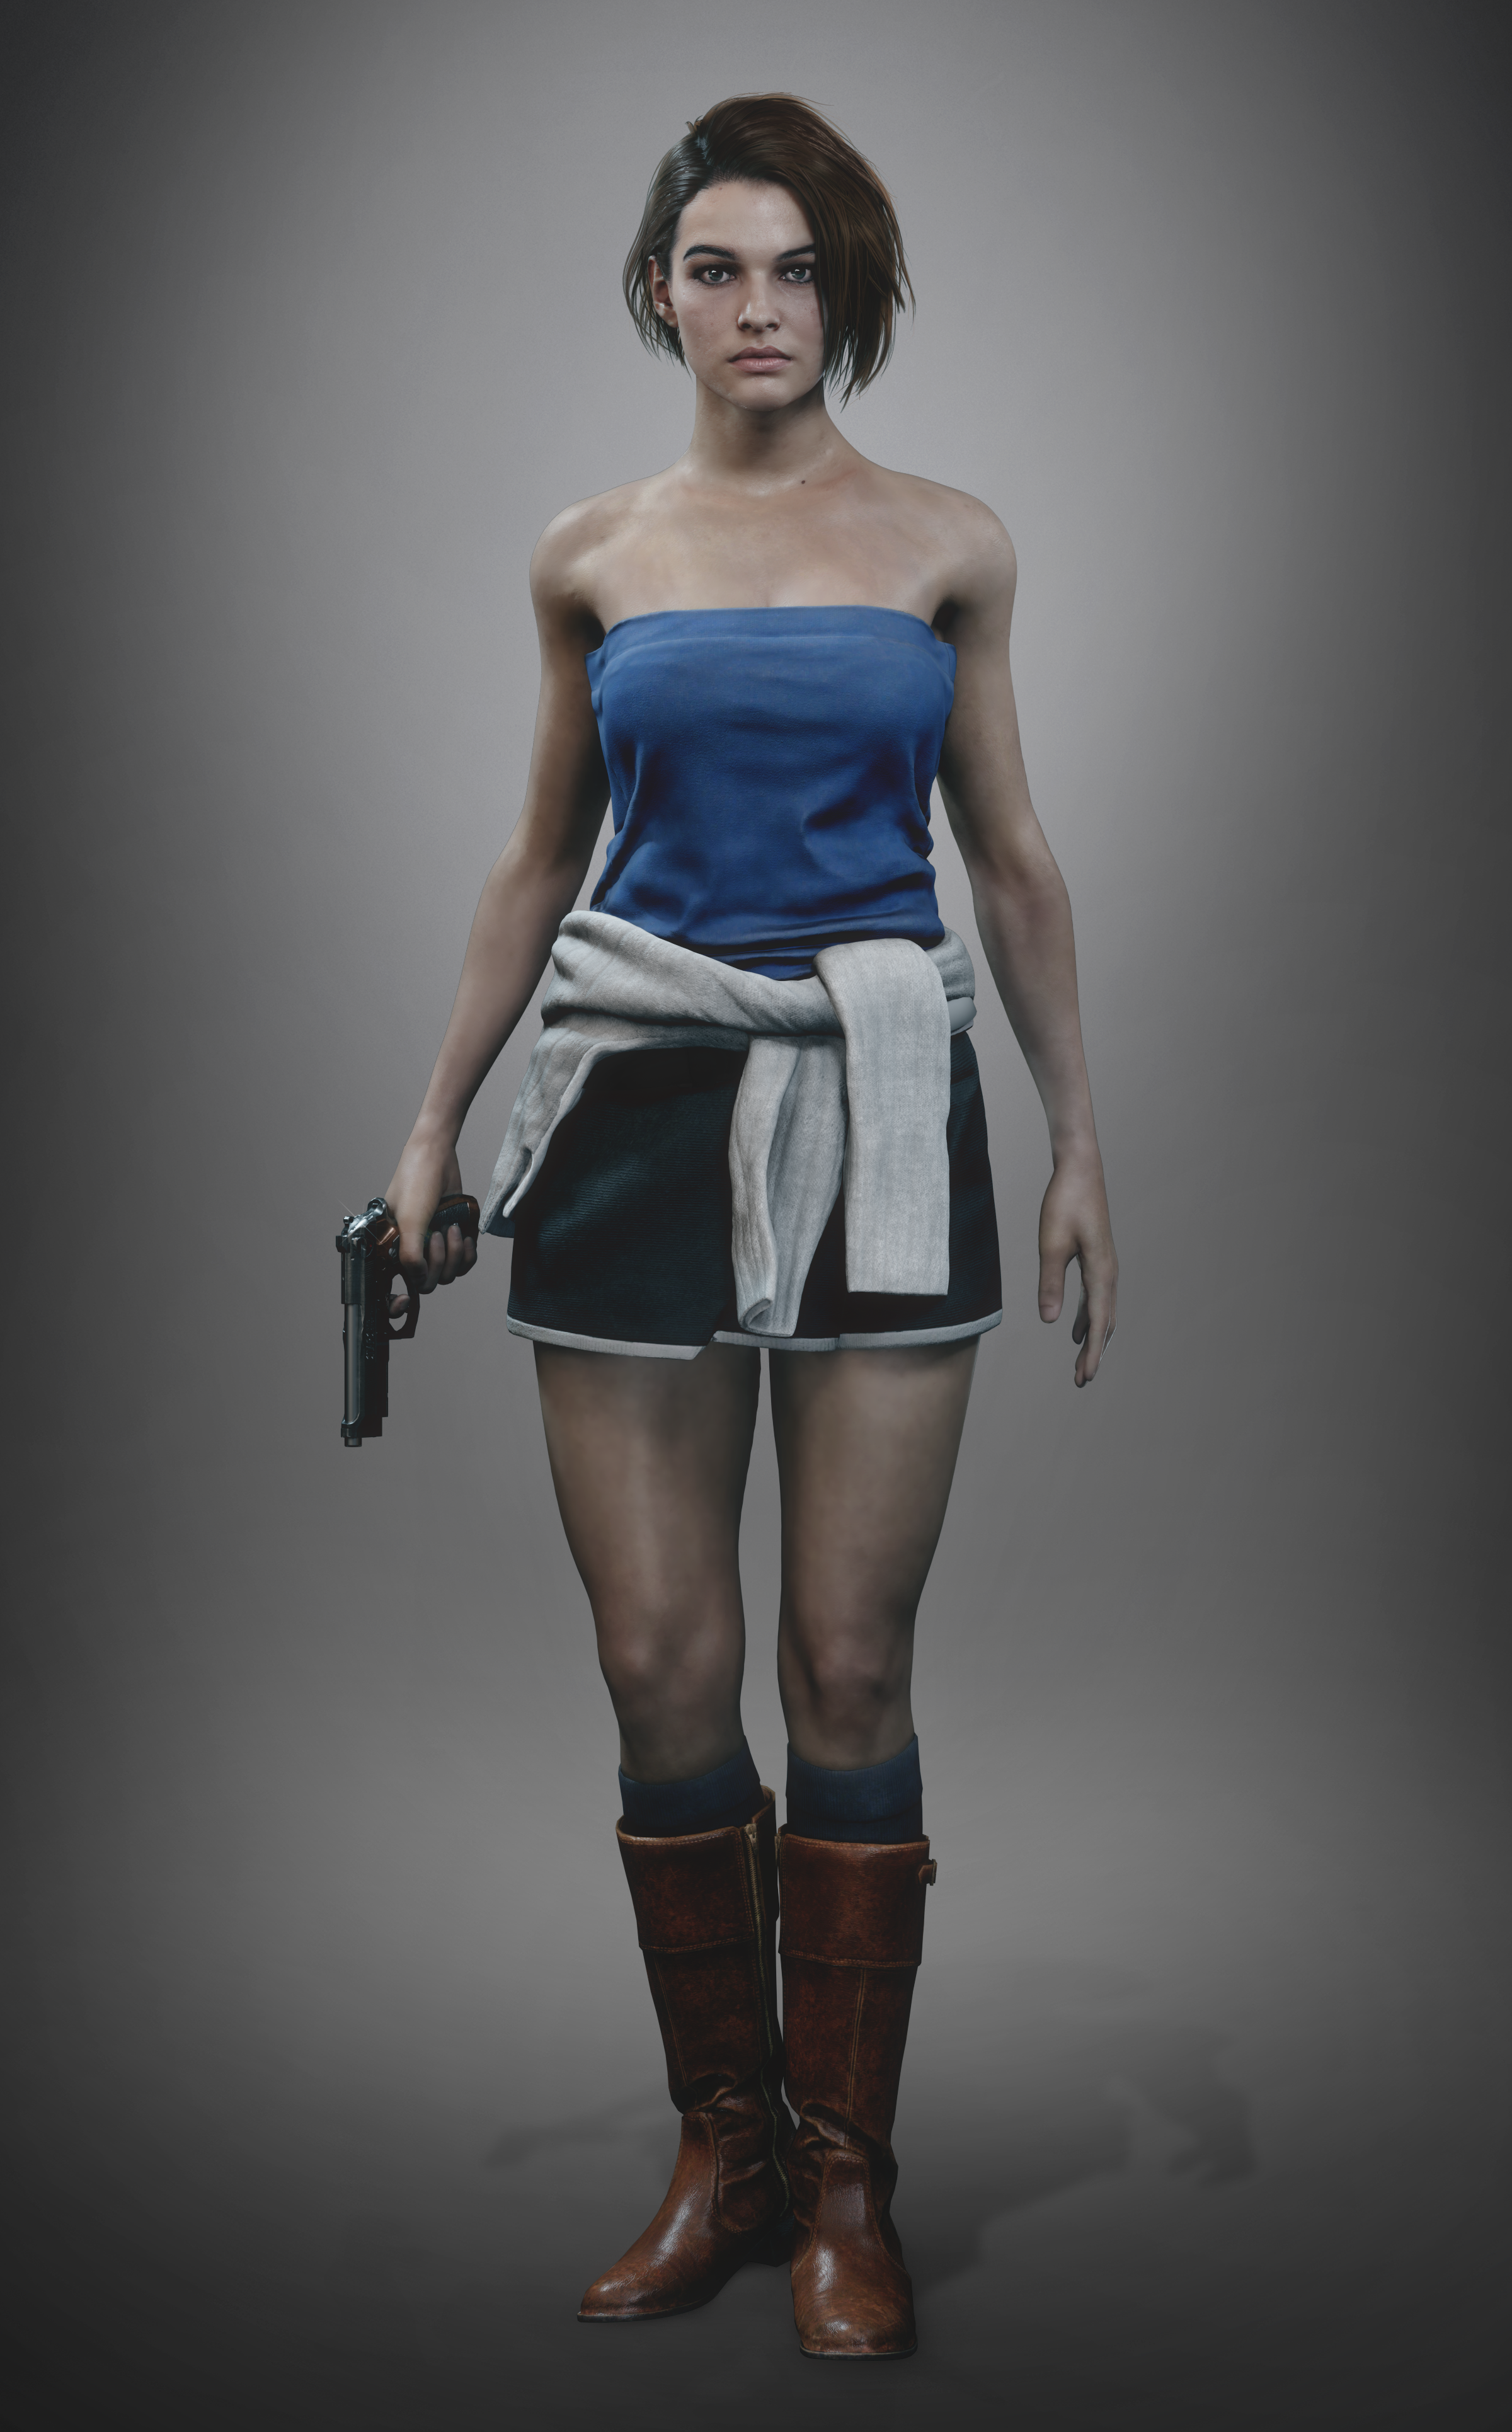 Jill Valentine (Default Outfit) by Sticklove on DeviantArt